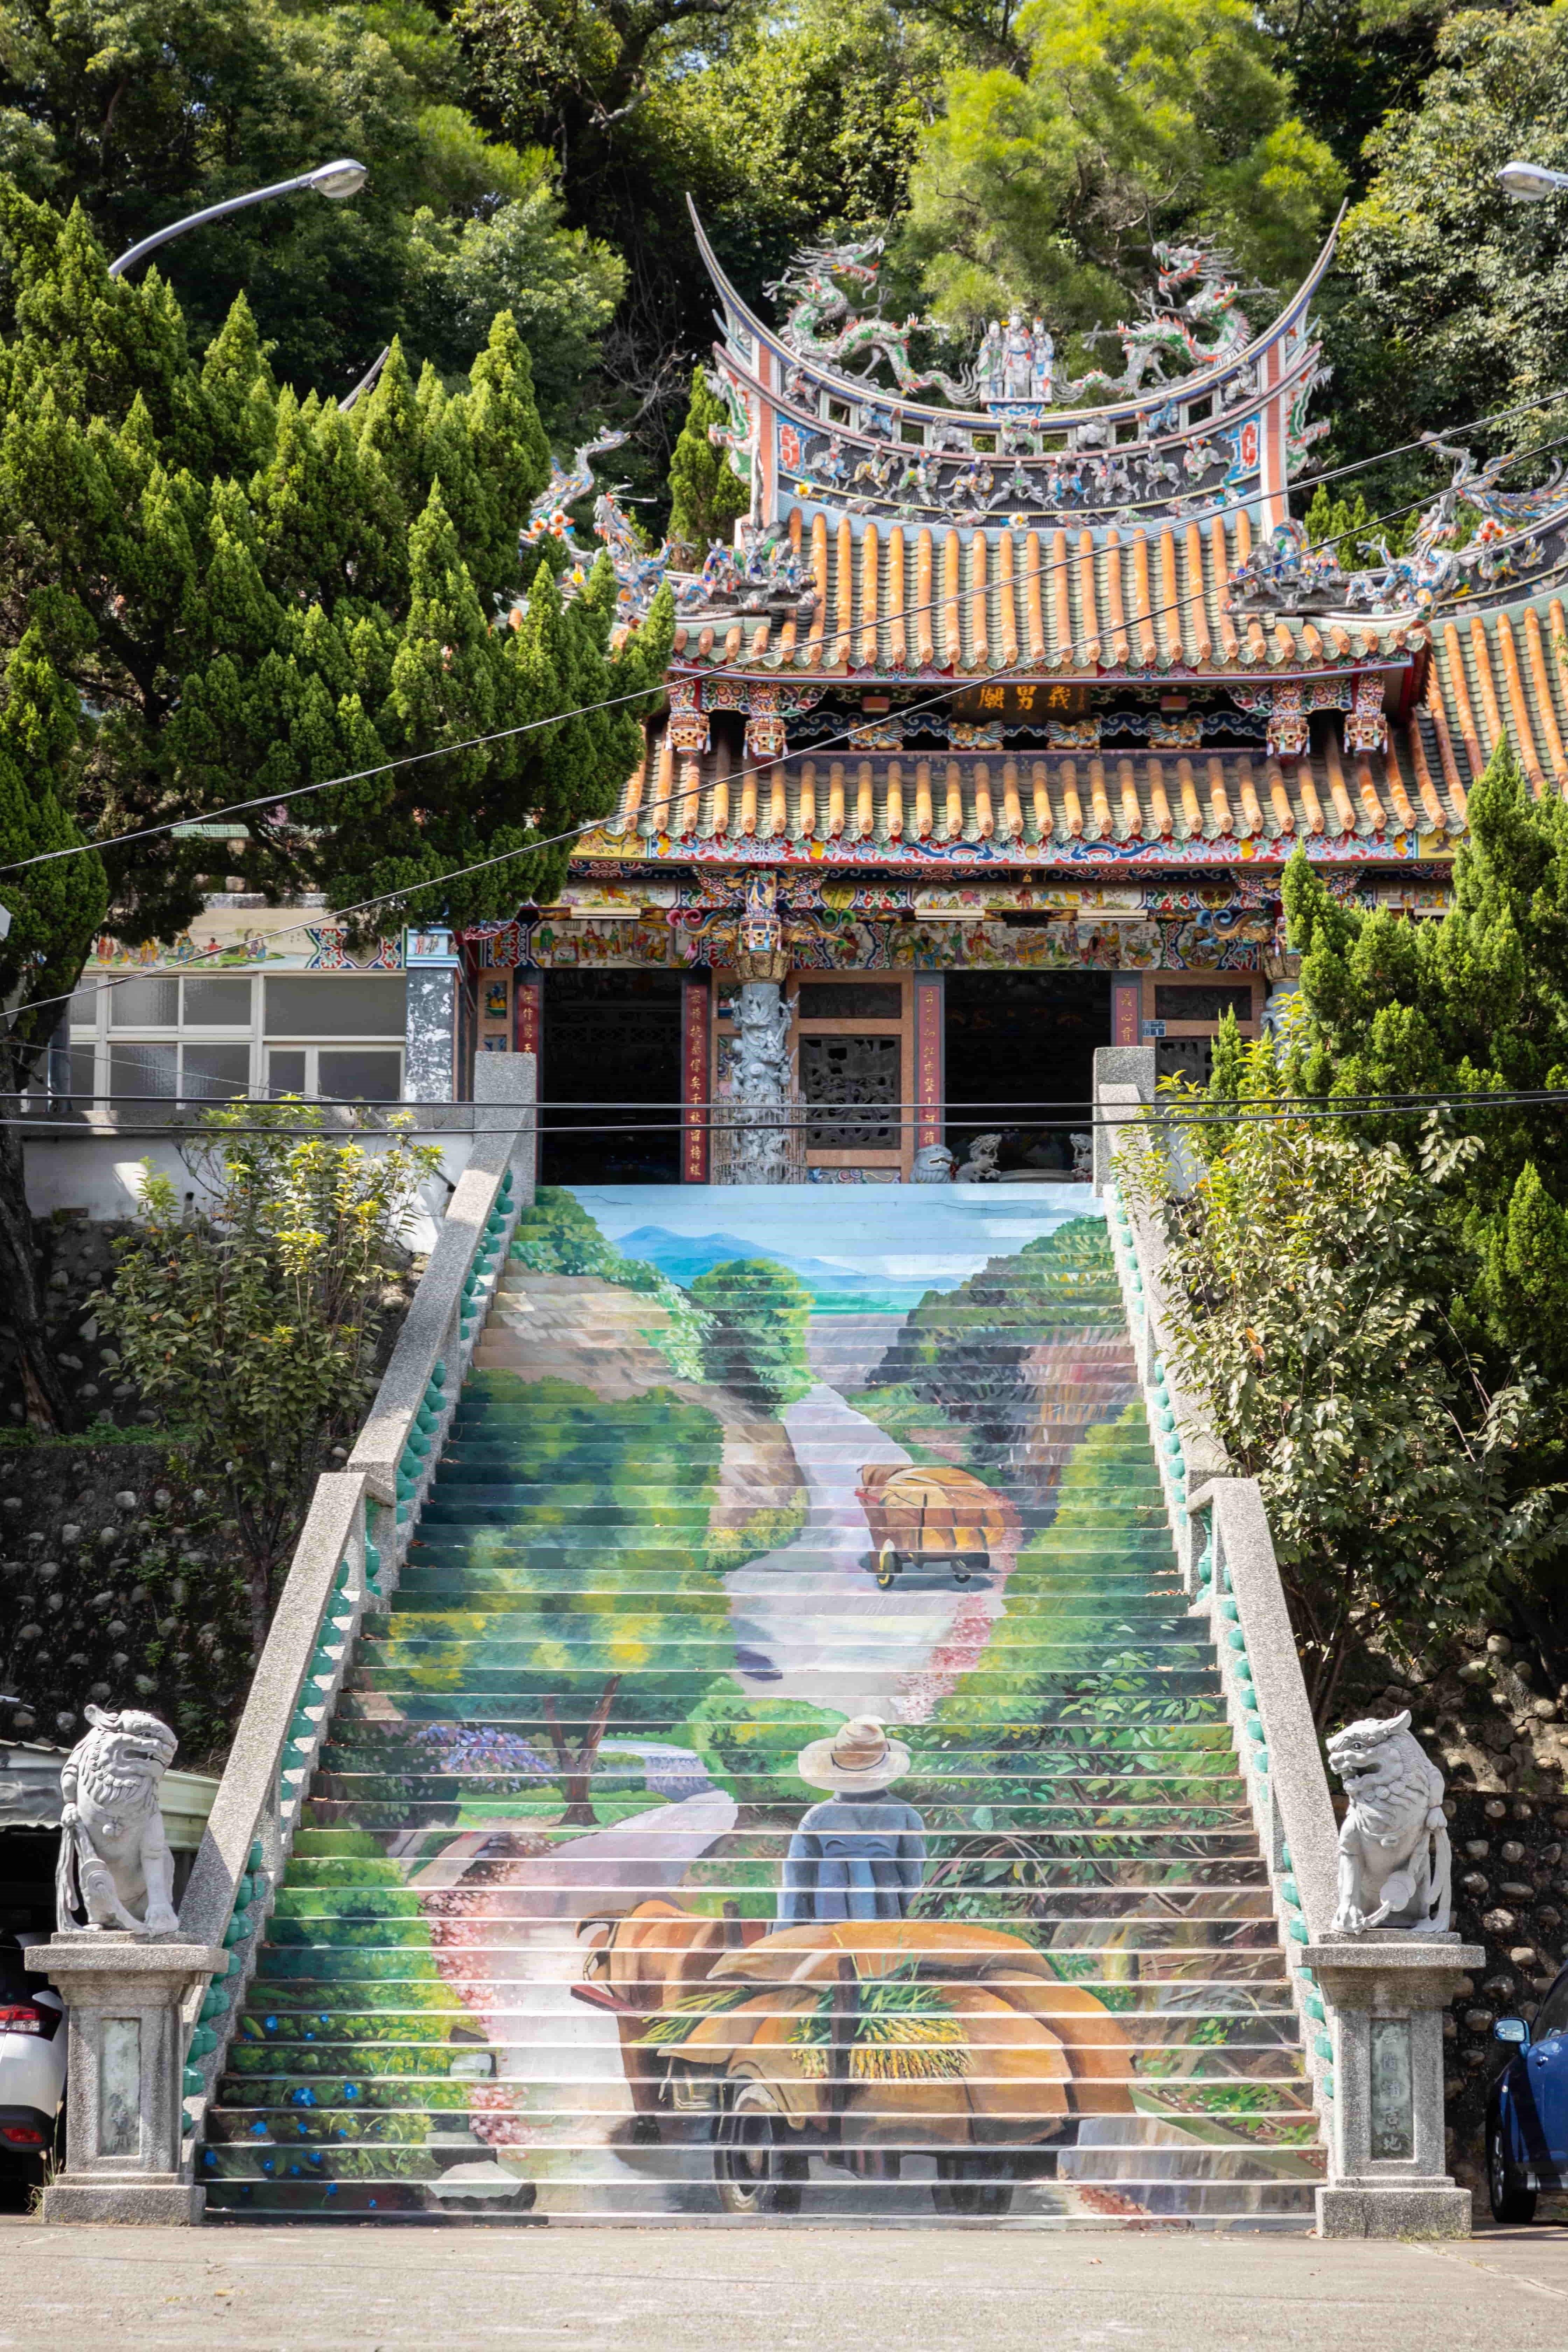 新埔國小附近的「義勇廟」有著美麗細膩的階梯彩繪。 